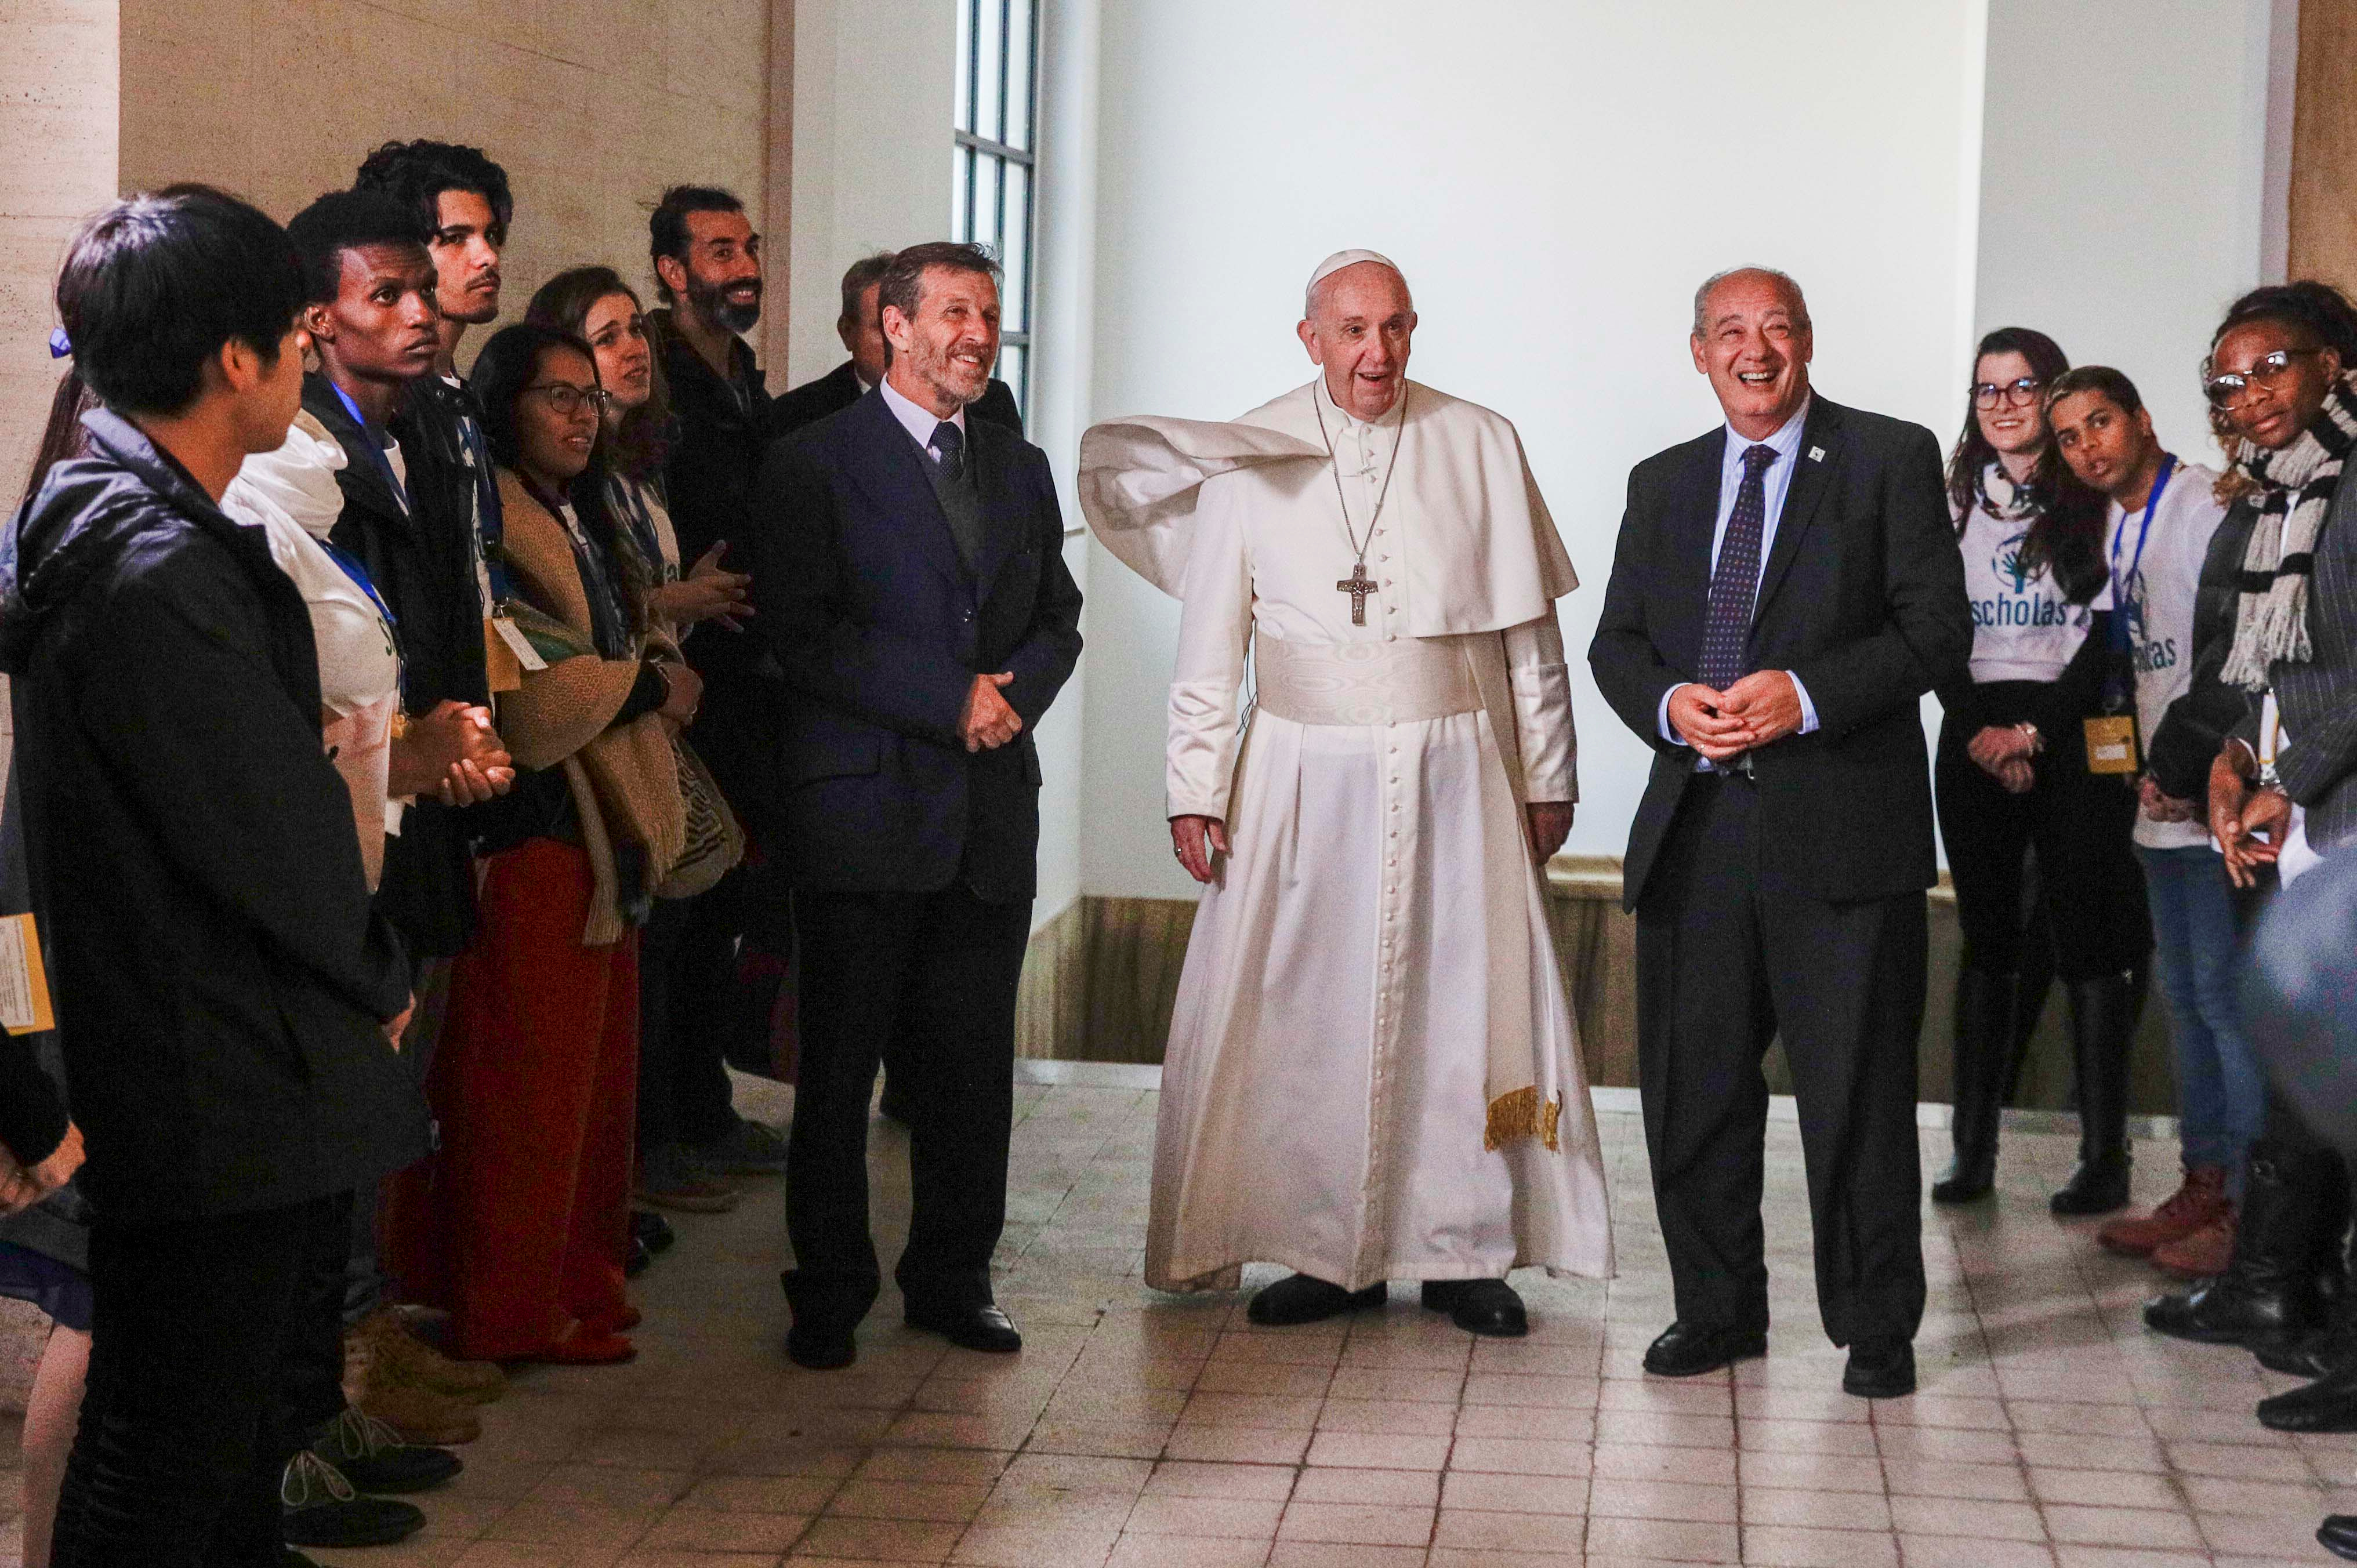 El papa Francisco lanzará el Movimiento Educativo Internacional Scholas Occurrentes en un encuentro con jóvenes